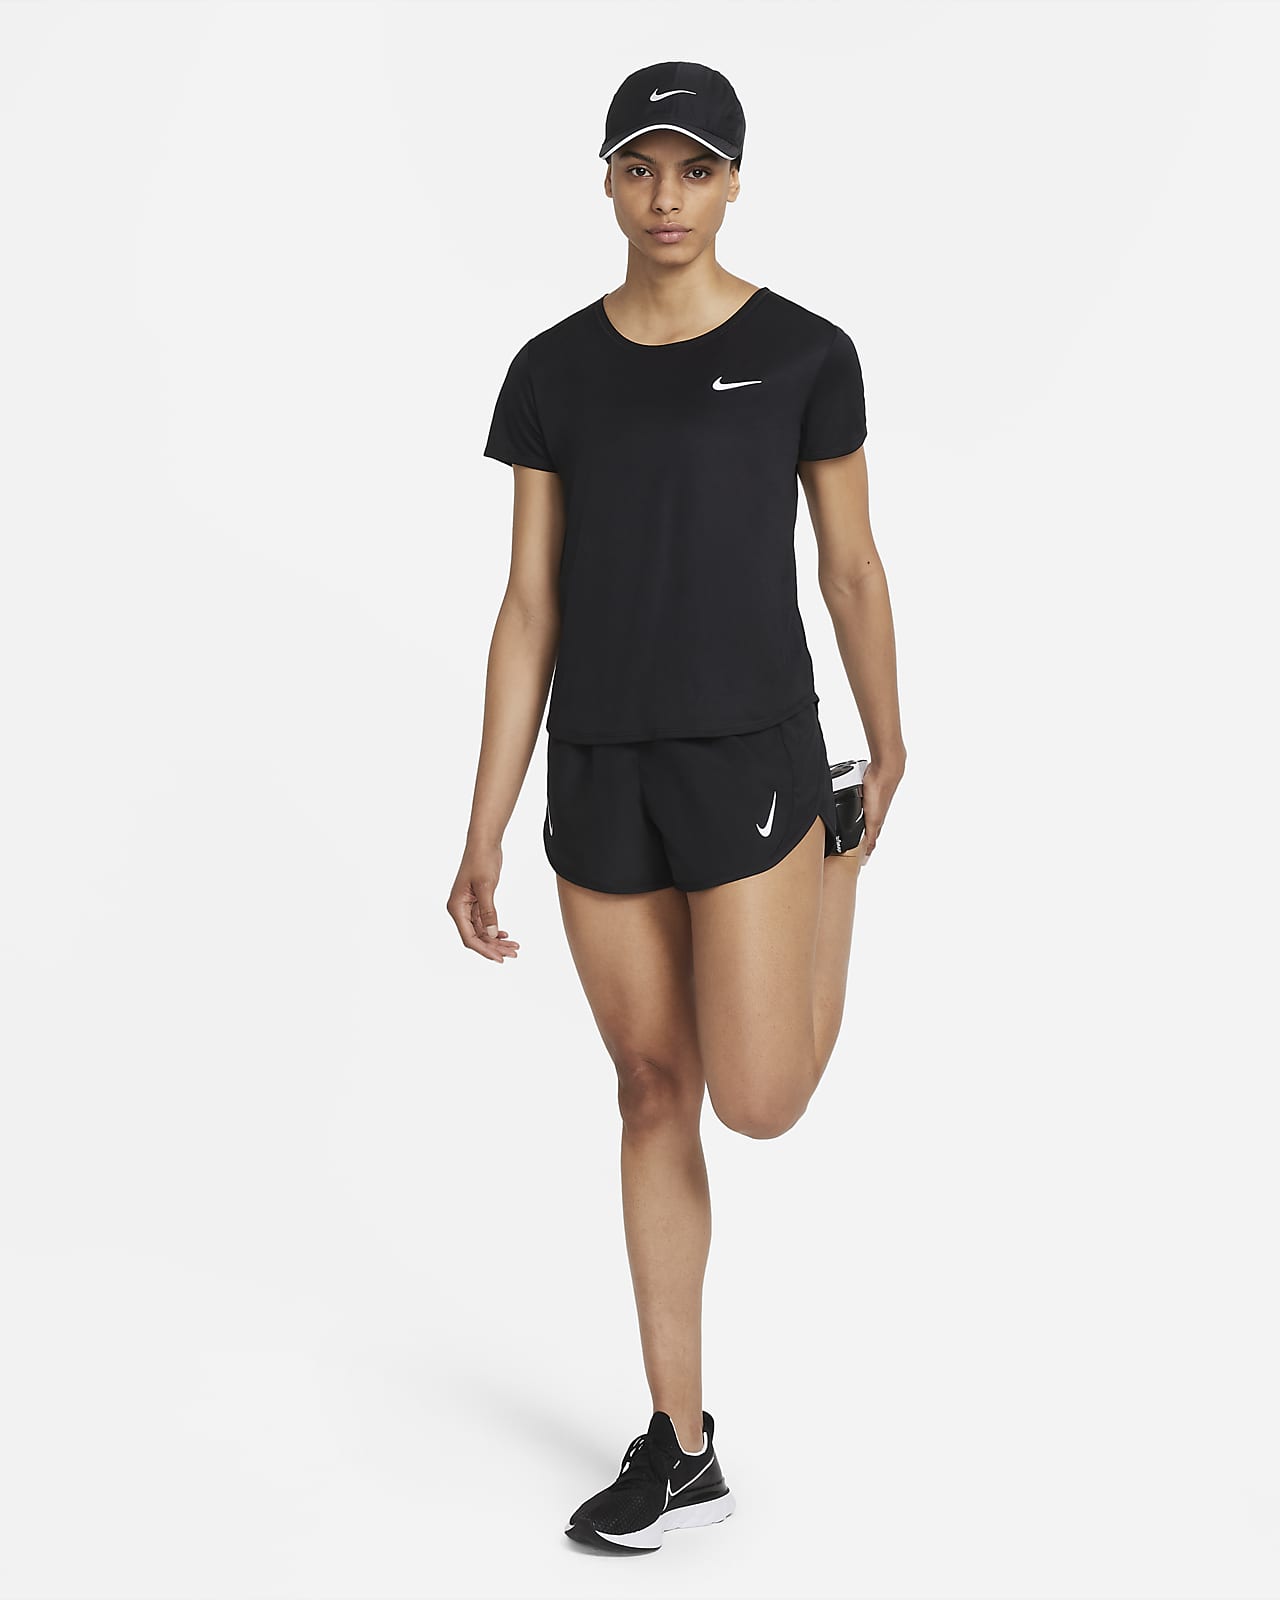 Nike Women's Dri Fit Tempo Running Shorts AJ4713 010 Black Size S